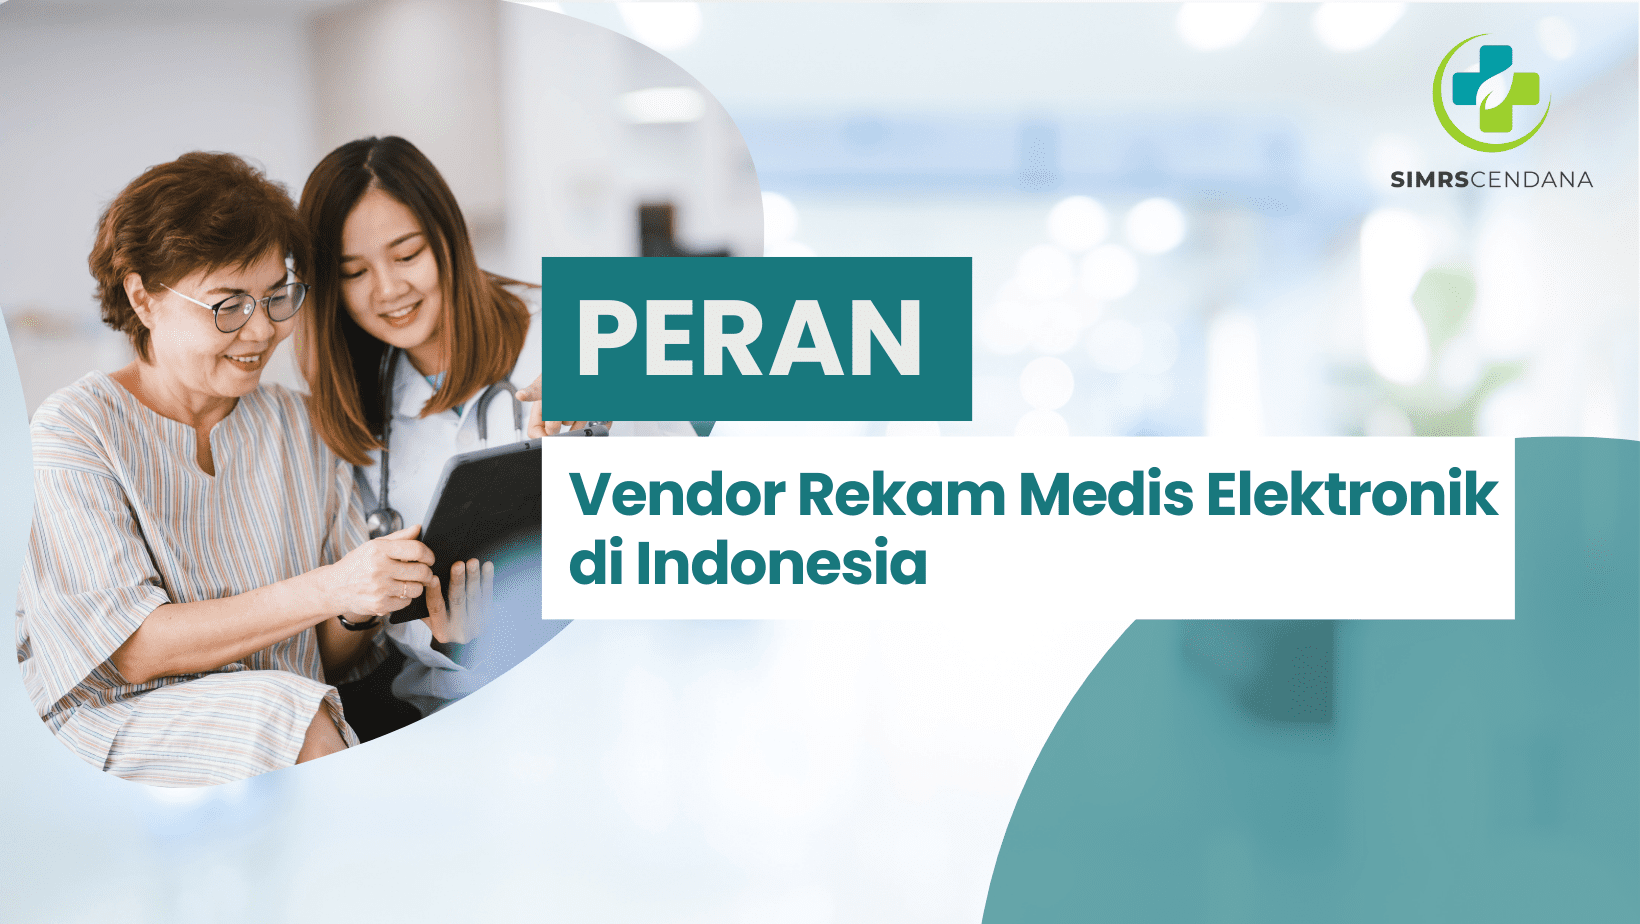 Peran Vendor Rekam Medis Elektronik di Indonesia